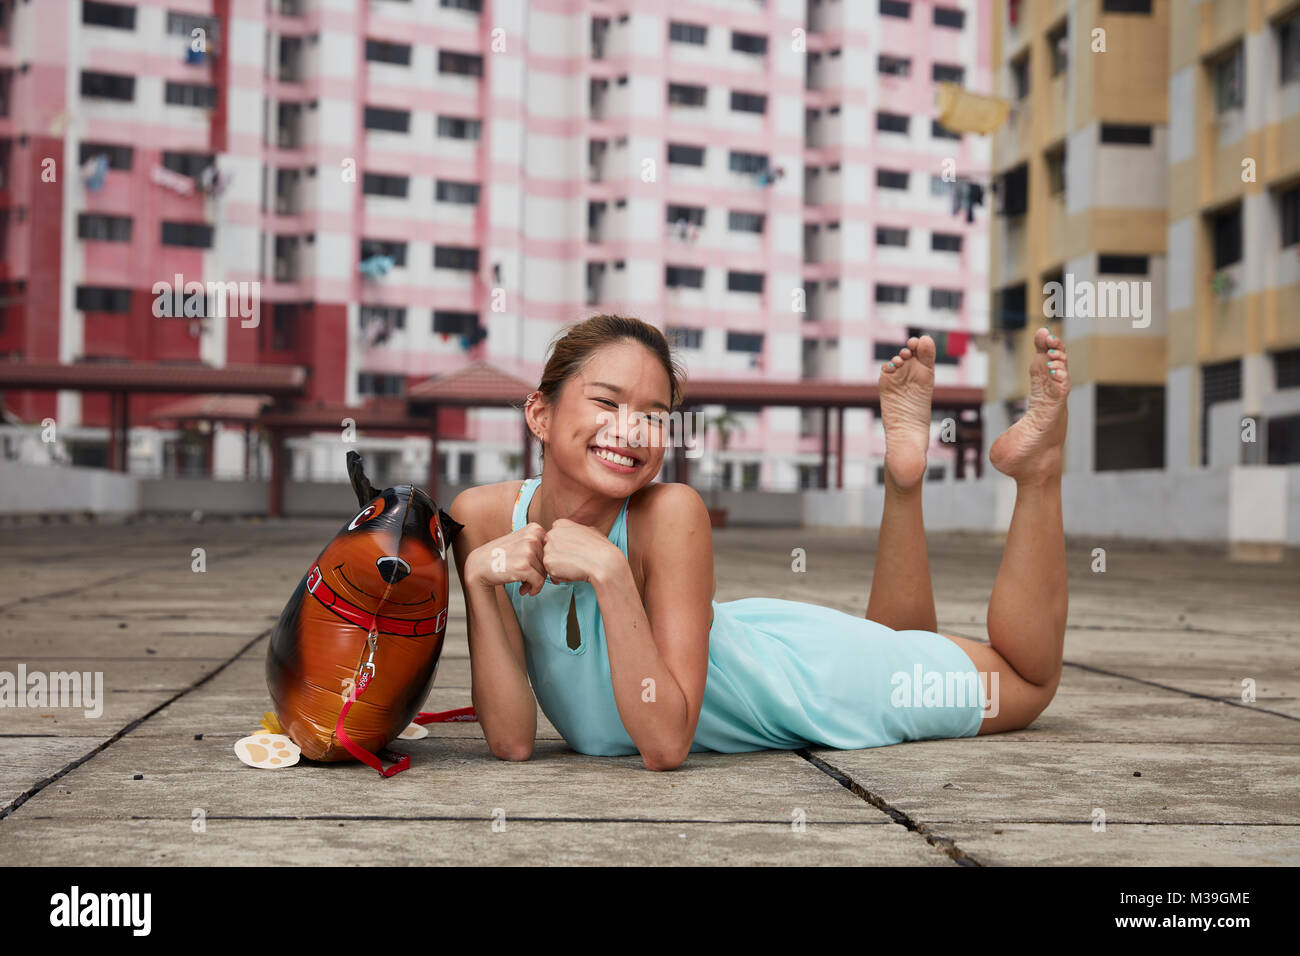 Gerne Spaß - liebevolle junge Tänzerin mit Spielzeug ballon Hund an Rochor Center, Singapur. Diese farbenfrohen Gebäude sind historische Sehenswürdigkeit. Stockfoto